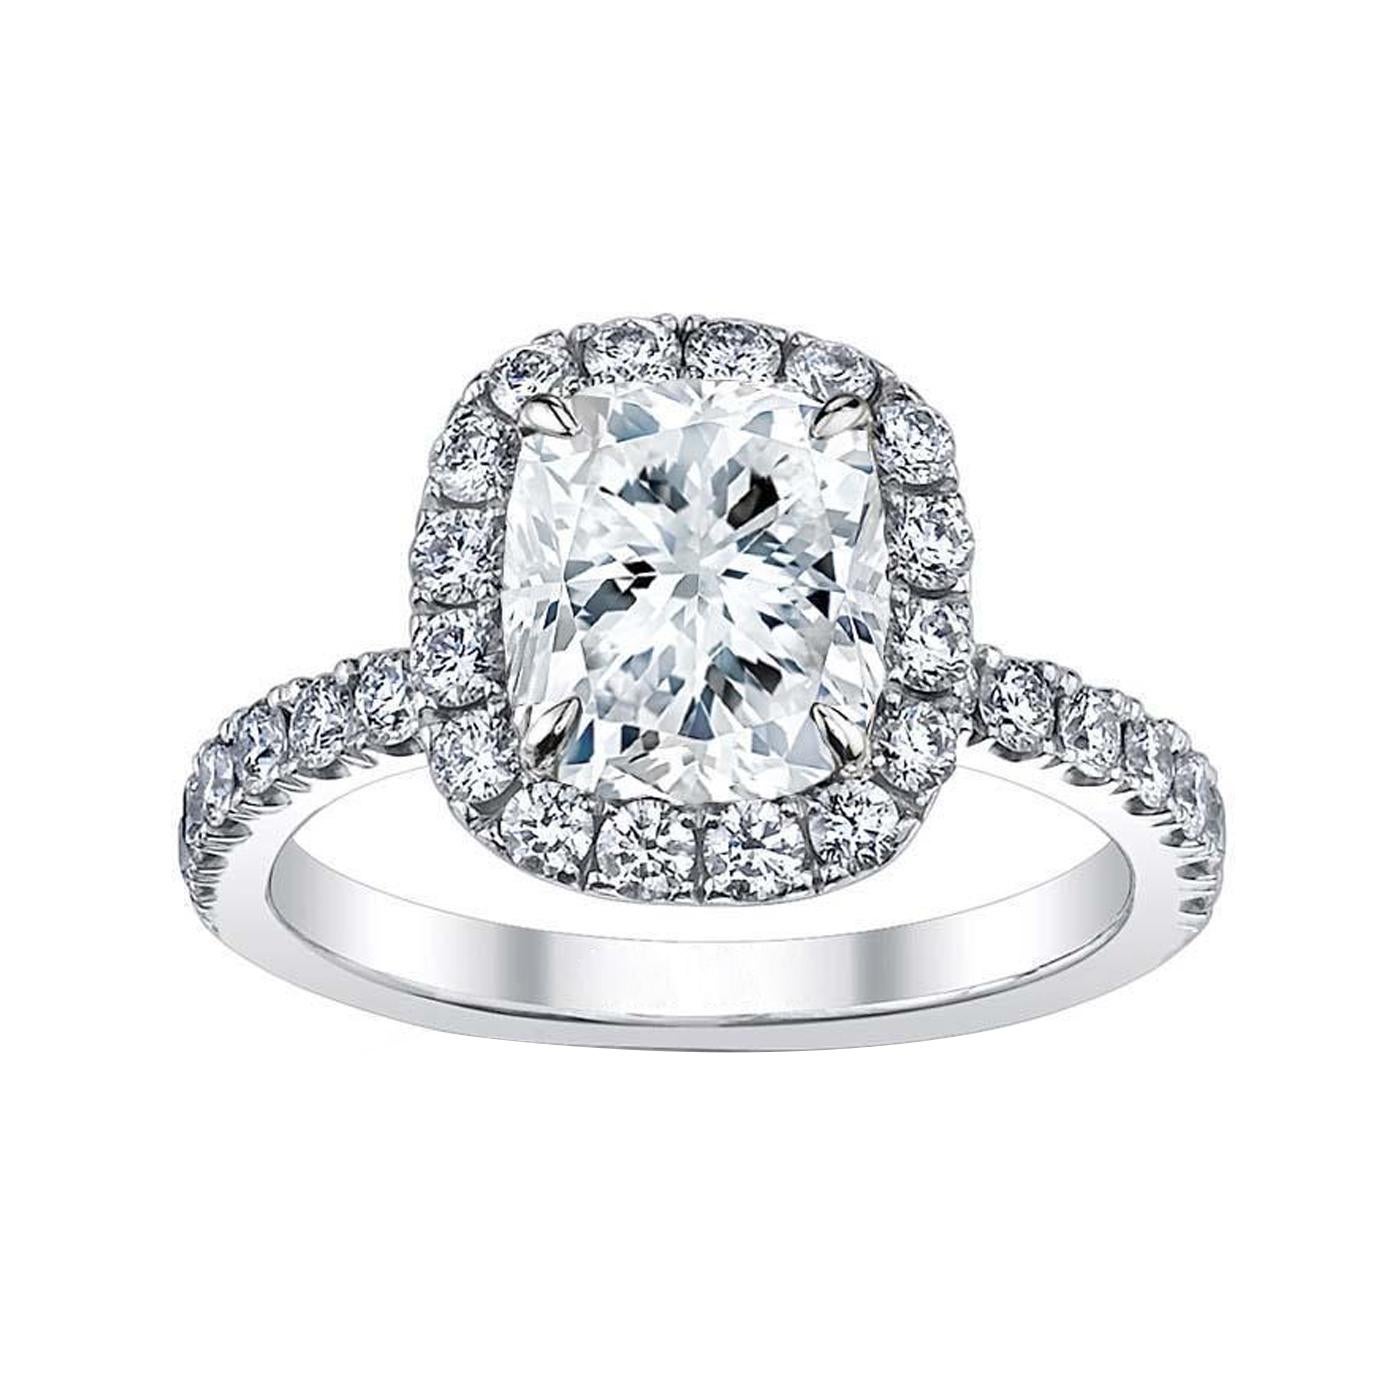 En ce qui concerne les diamants, nous avons le plaisir de vous présenter une bague en diamant naturel de 2,70 carats à taille coussin. Cette jolie bague présente une couleur H et une pureté VS1 et est entourée de diamants Pave. Avec une taille de 6